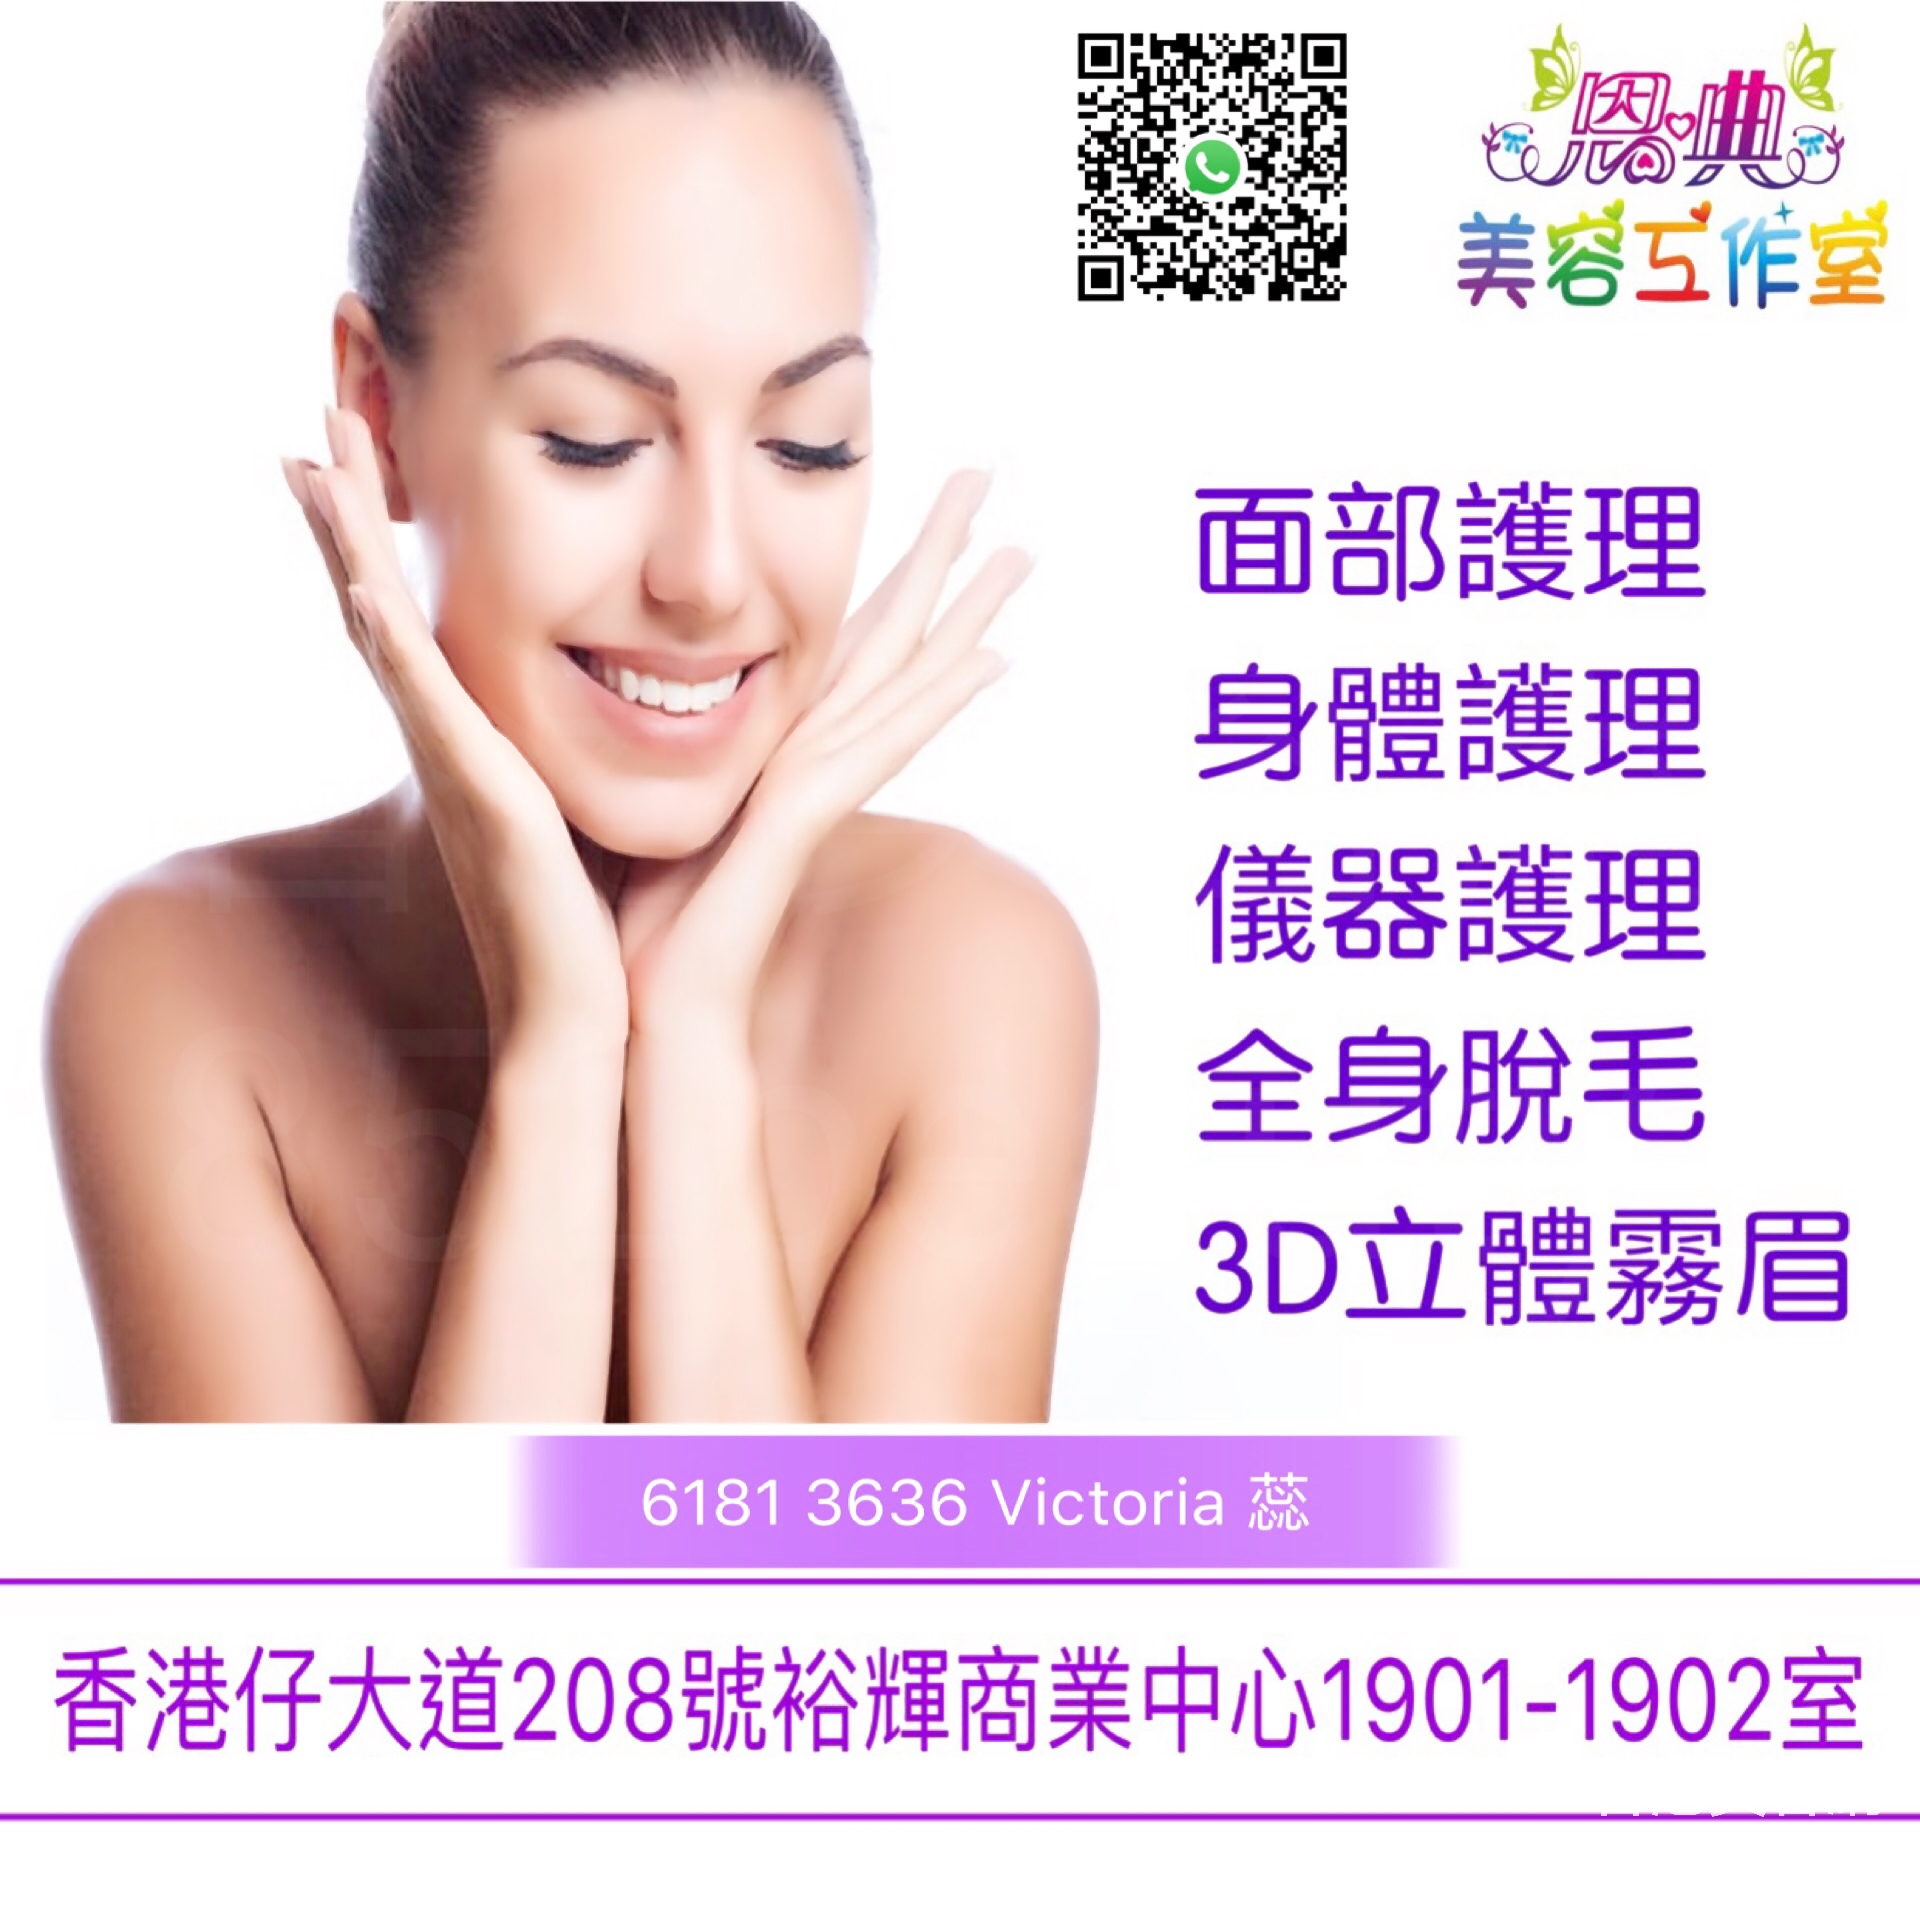 香港美容網 Hong Kong Beauty Salon 美容院 / 美容師: 恩典美容工作室